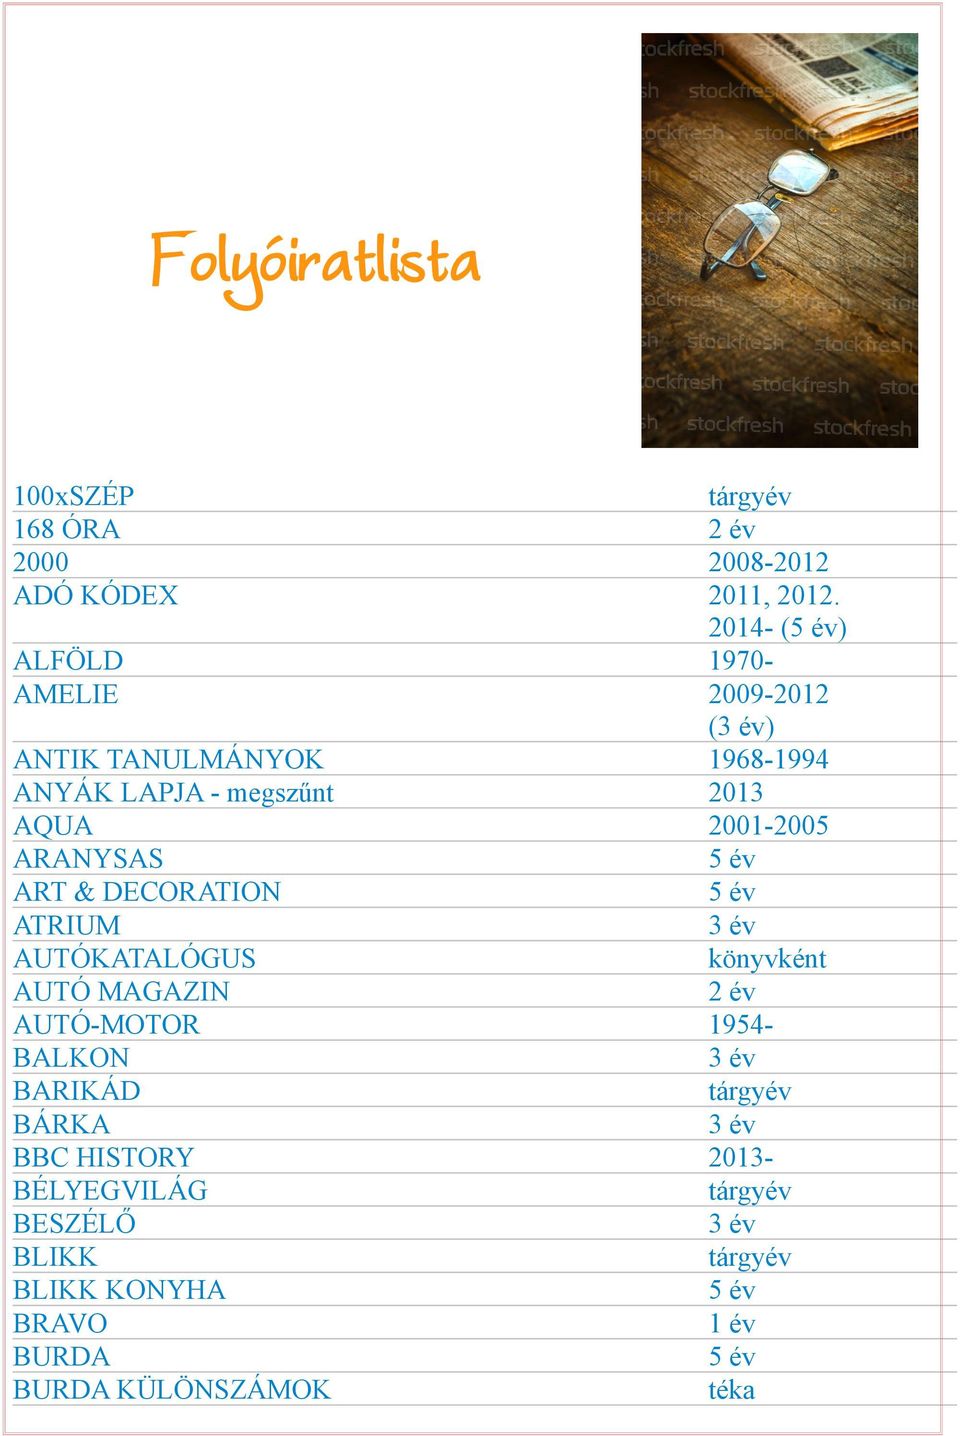 2013 AQUA 2001-2005 ARANYSAS ART & DECORATION ATRIUM AUTÓKATALÓGUS könyvként AUTÓ MAGAZIN